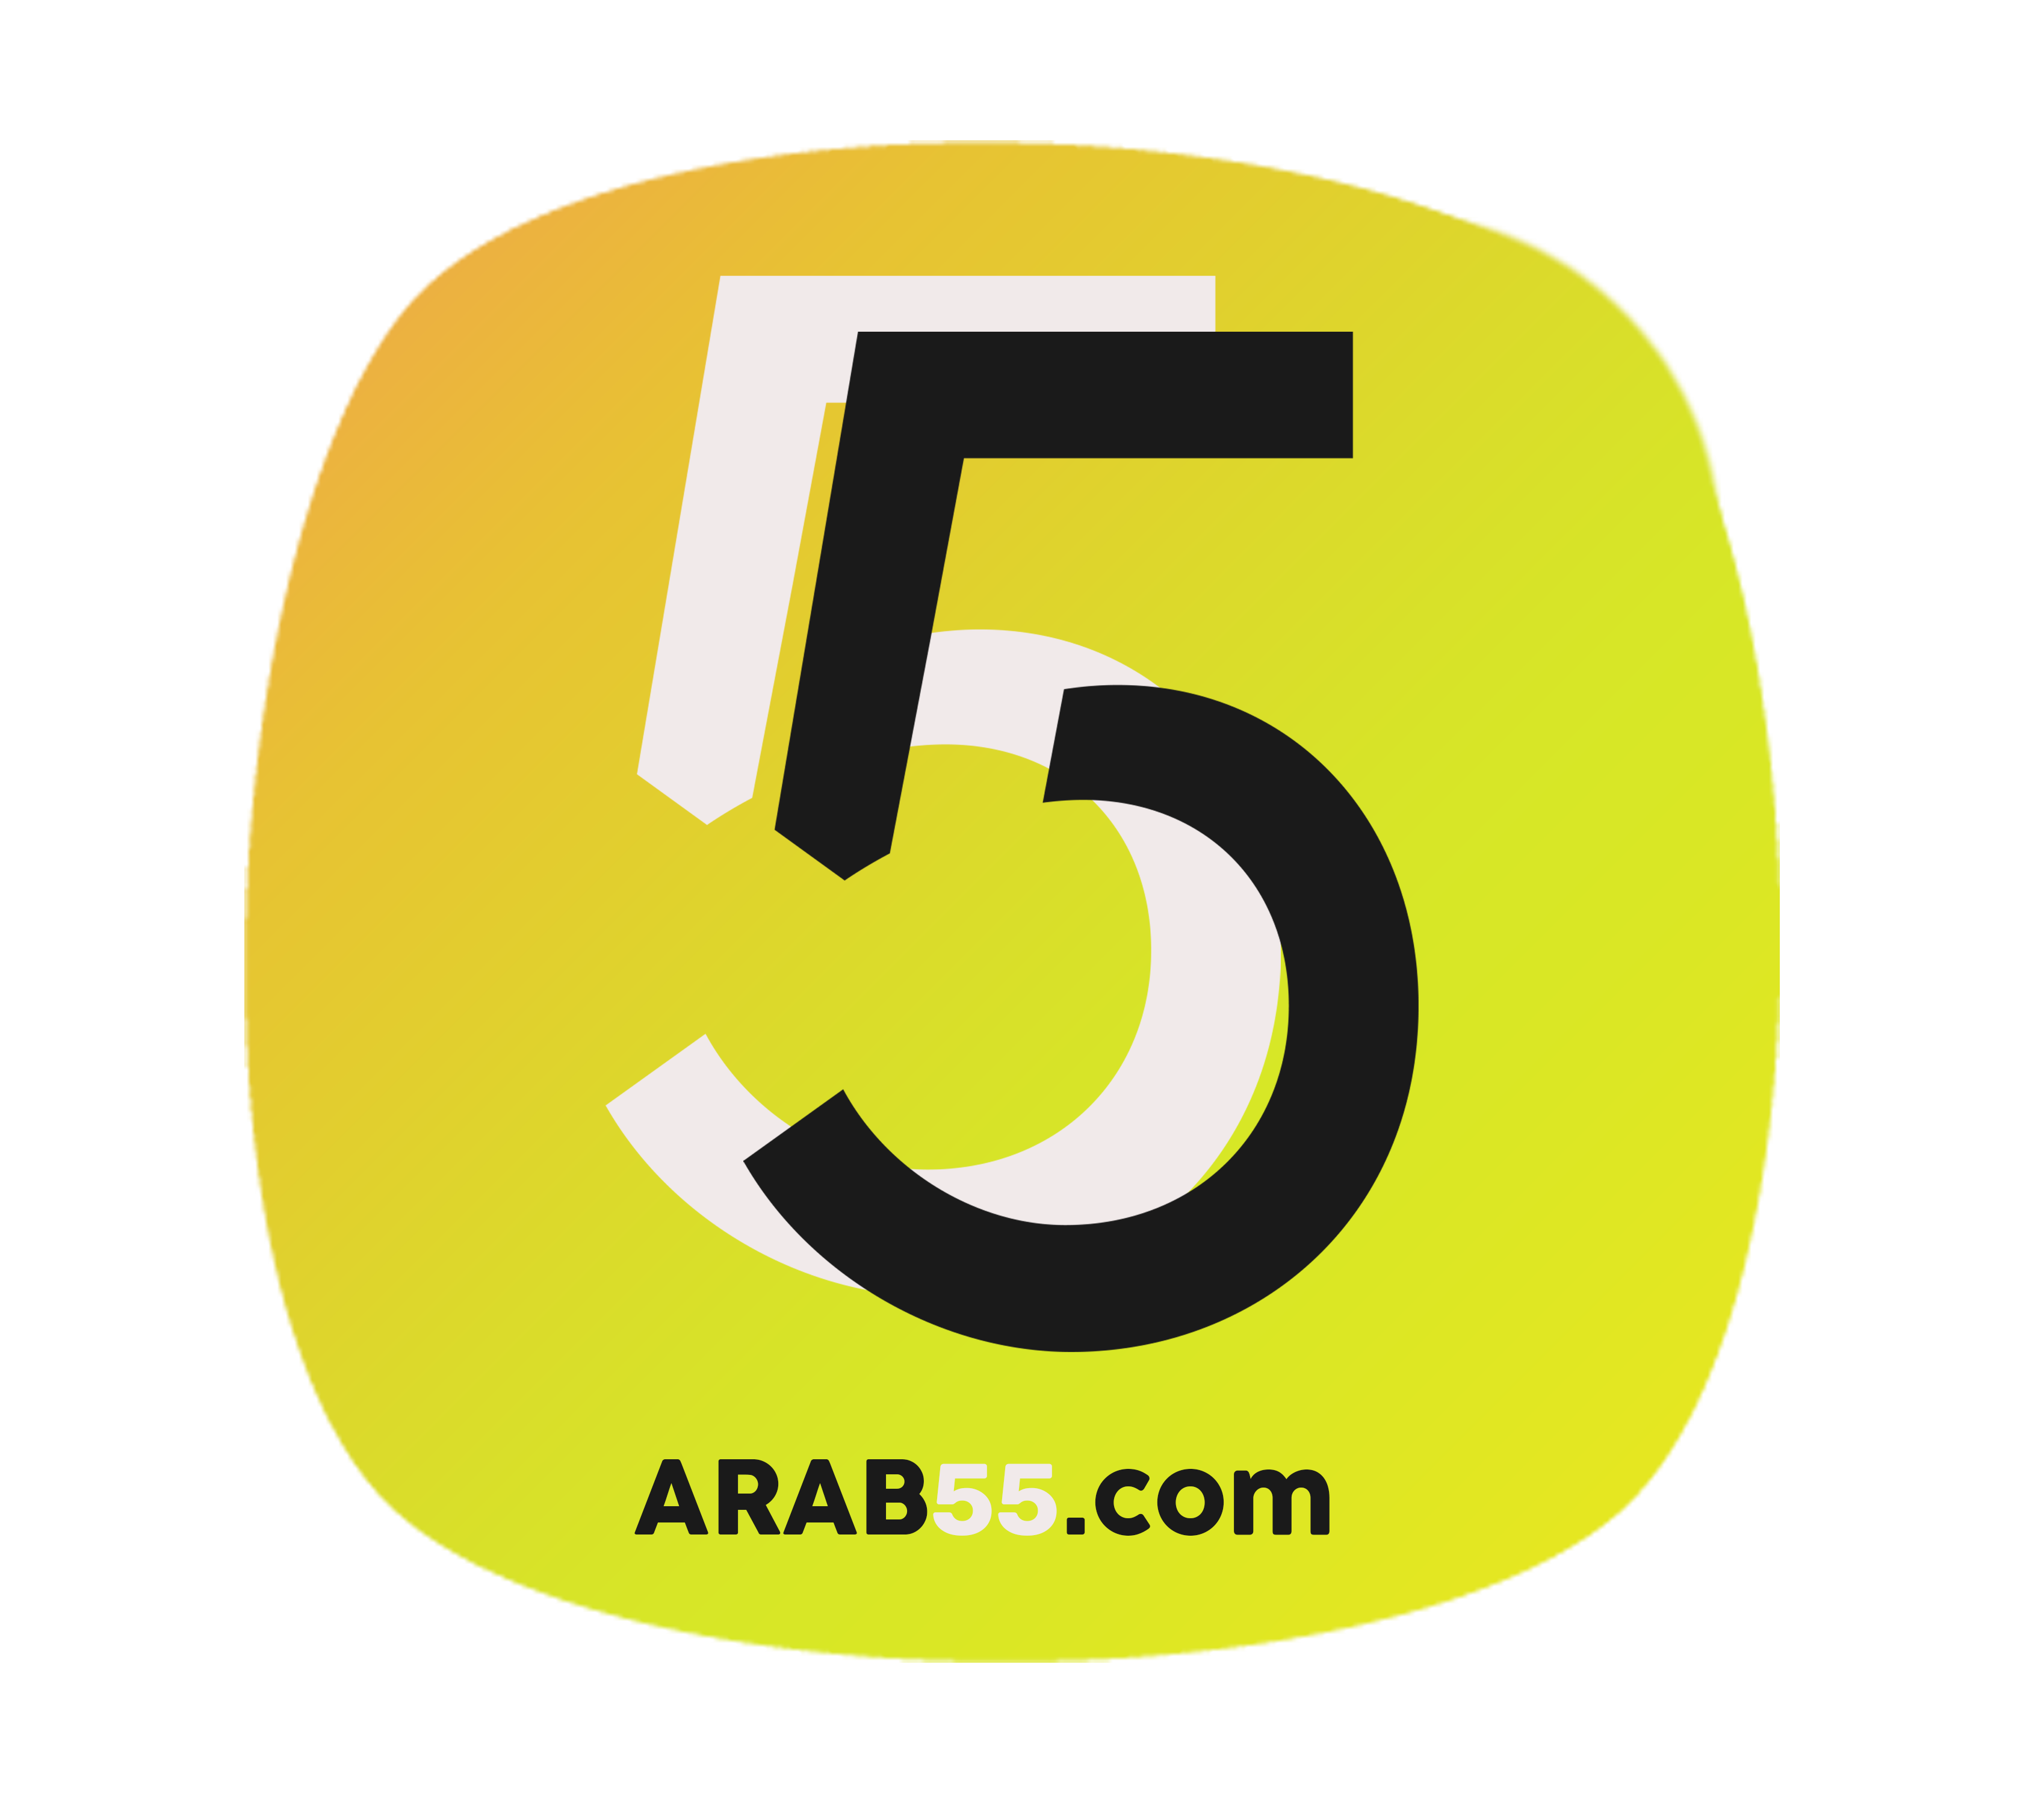 المتجر - متجر عرب55